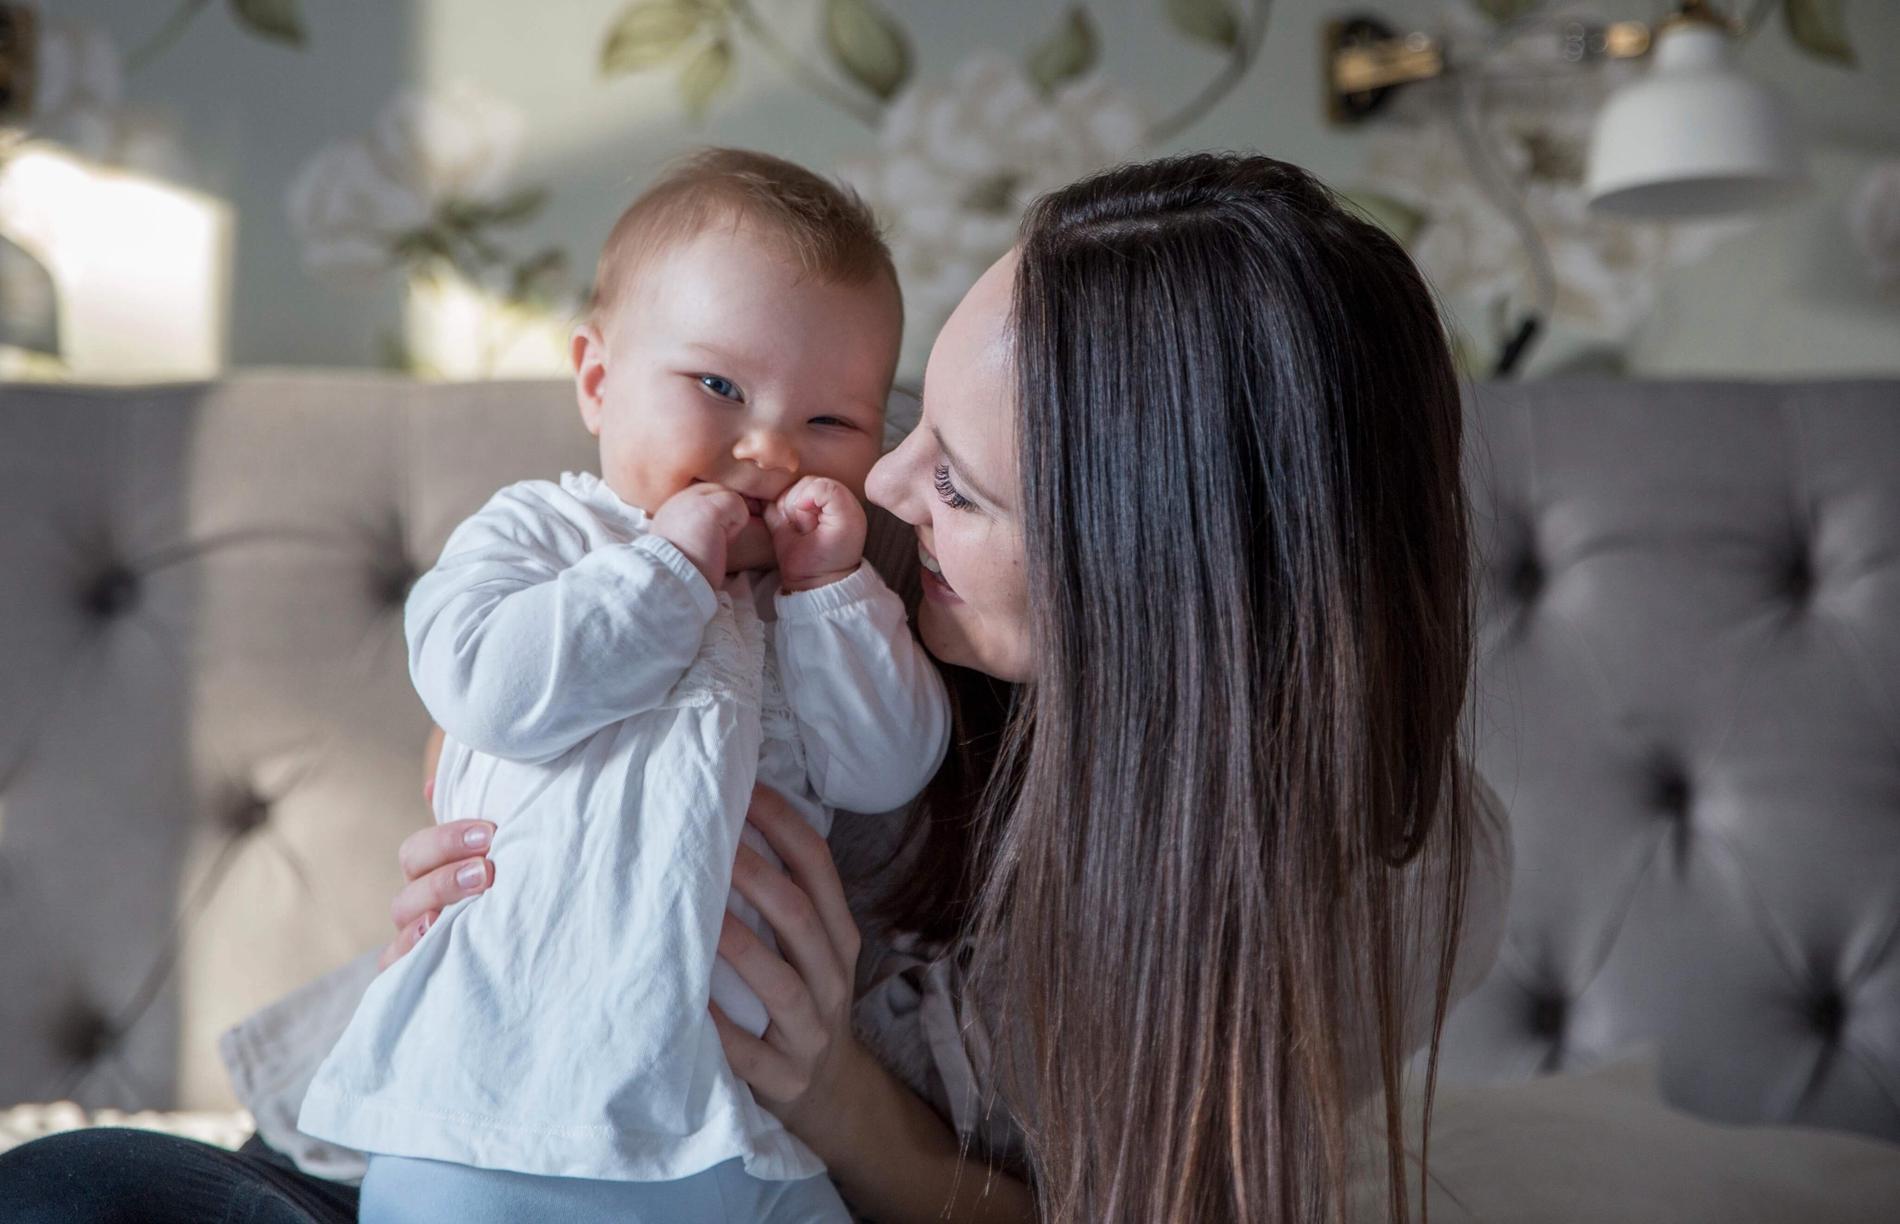 Emelie Nenonen slutade snusa när hon blev gravid. Här med nio månader gamla dottern Alice Nenonen.